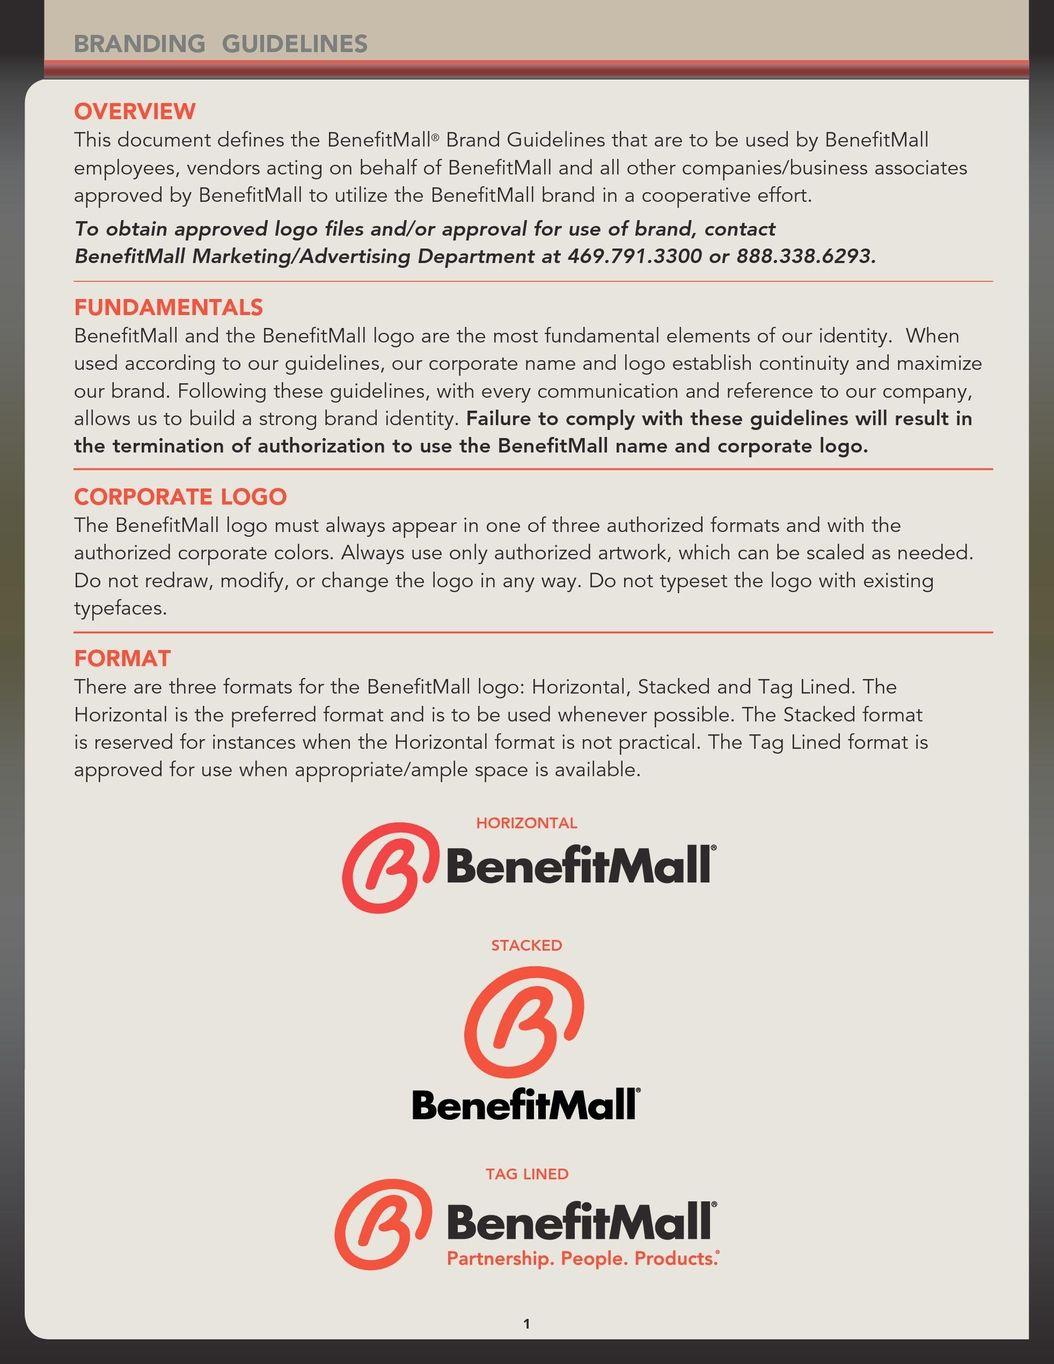 BenefitMall Logo - Branding Guidelines - Internal